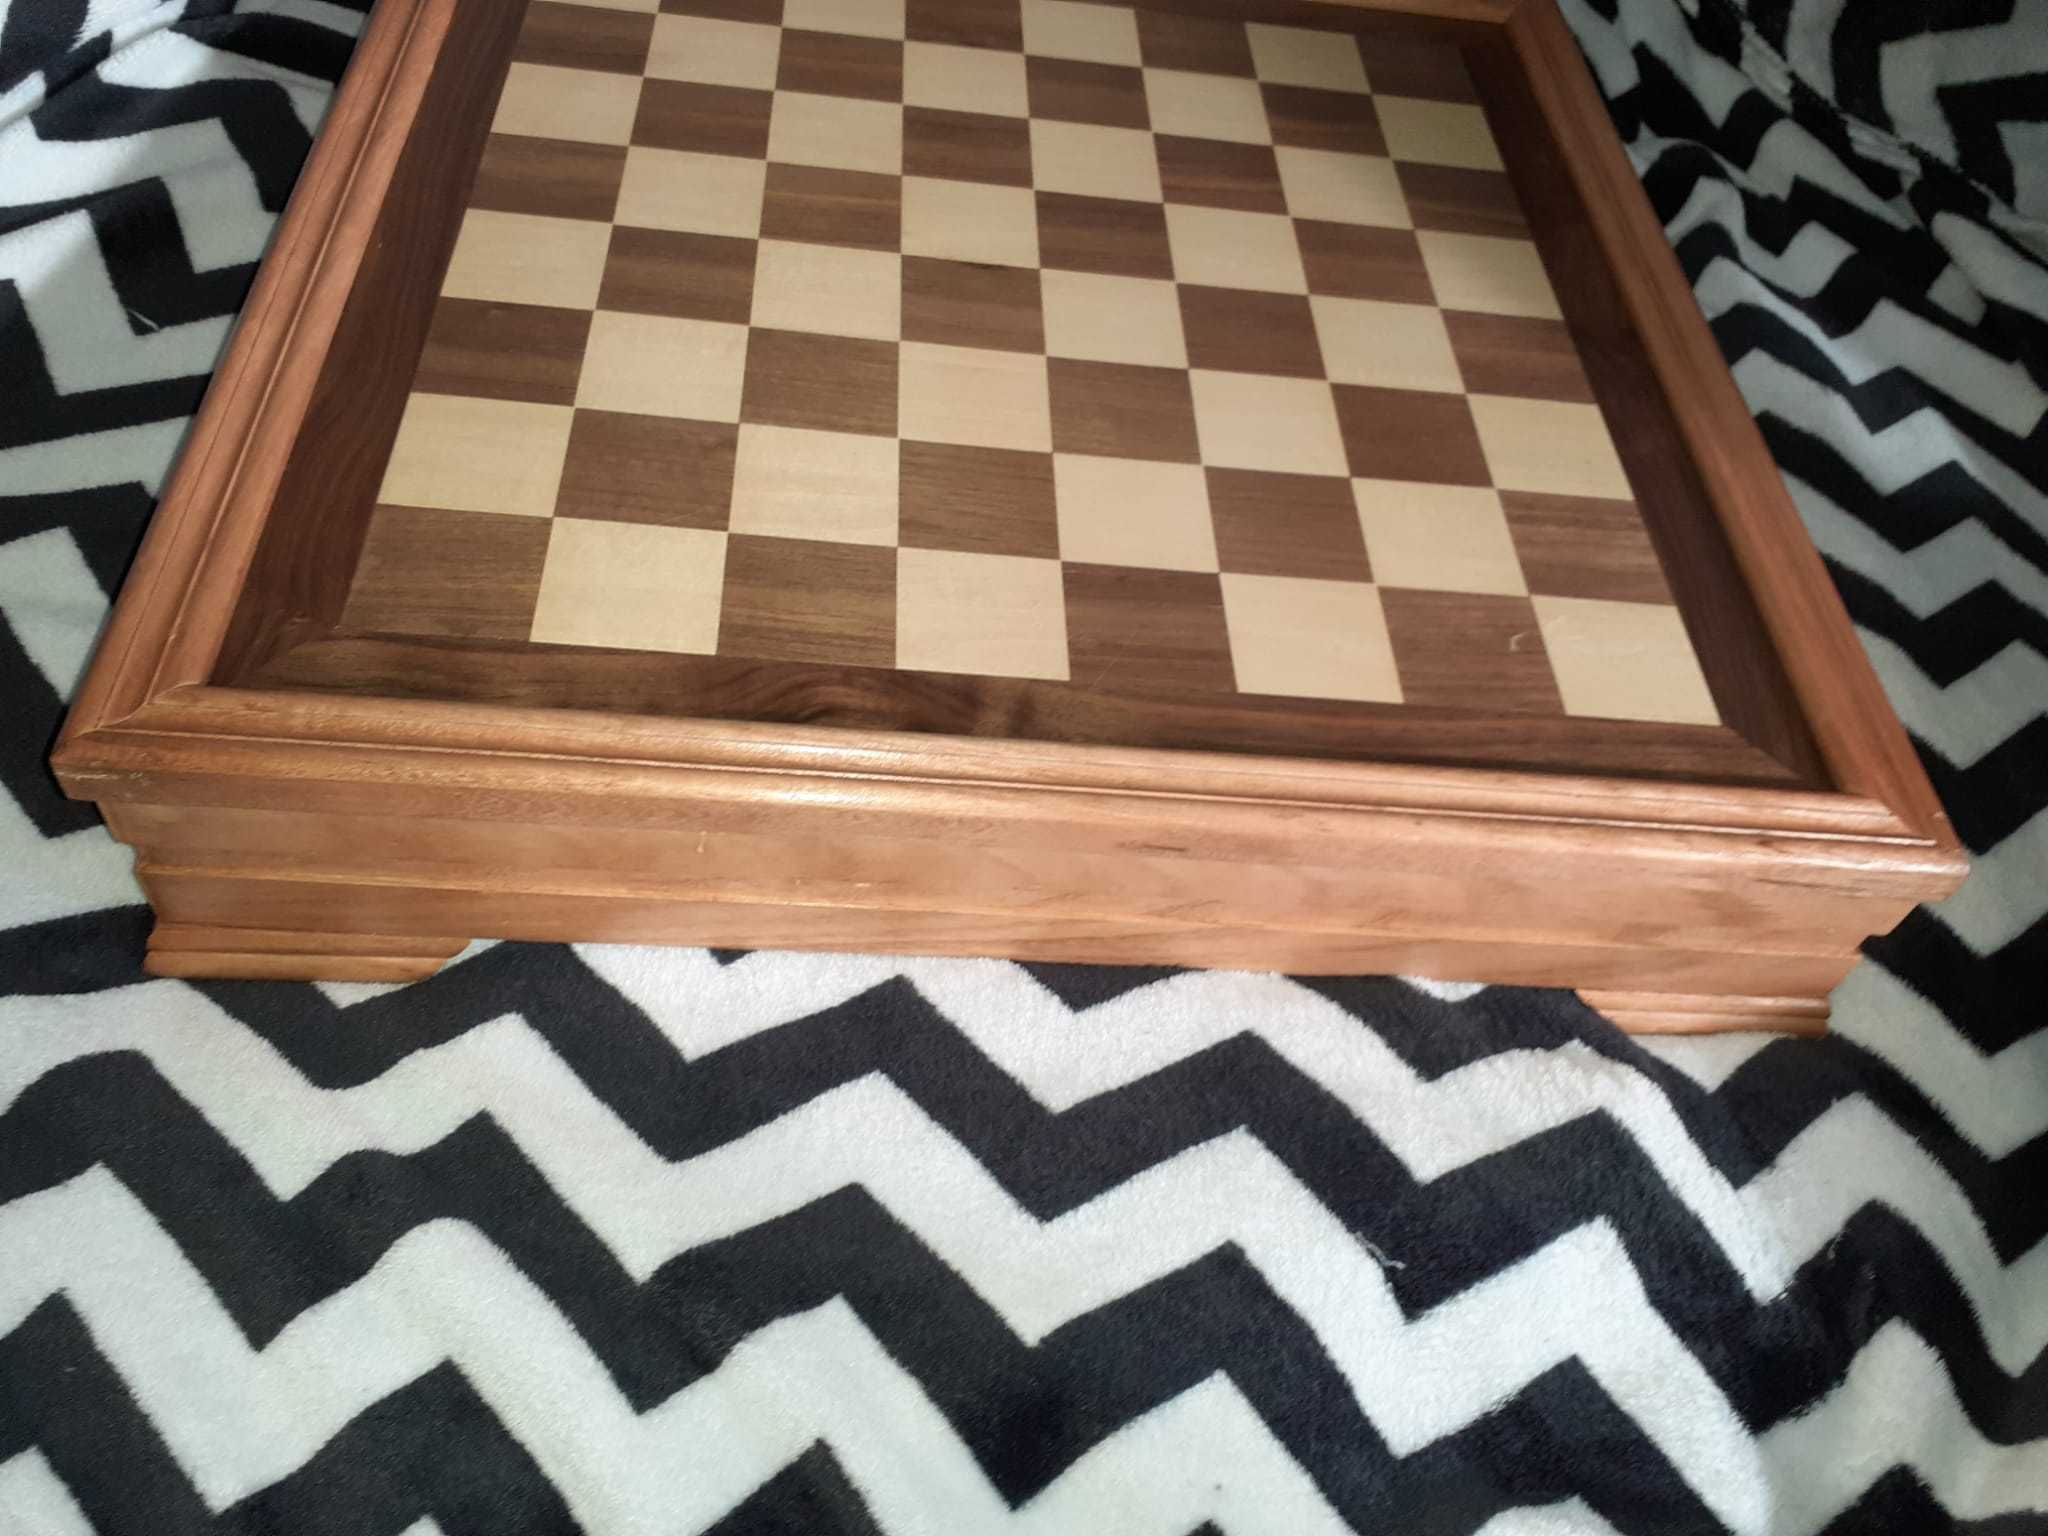 Jogo de Xadrez - caixa madeira e peças porcelana